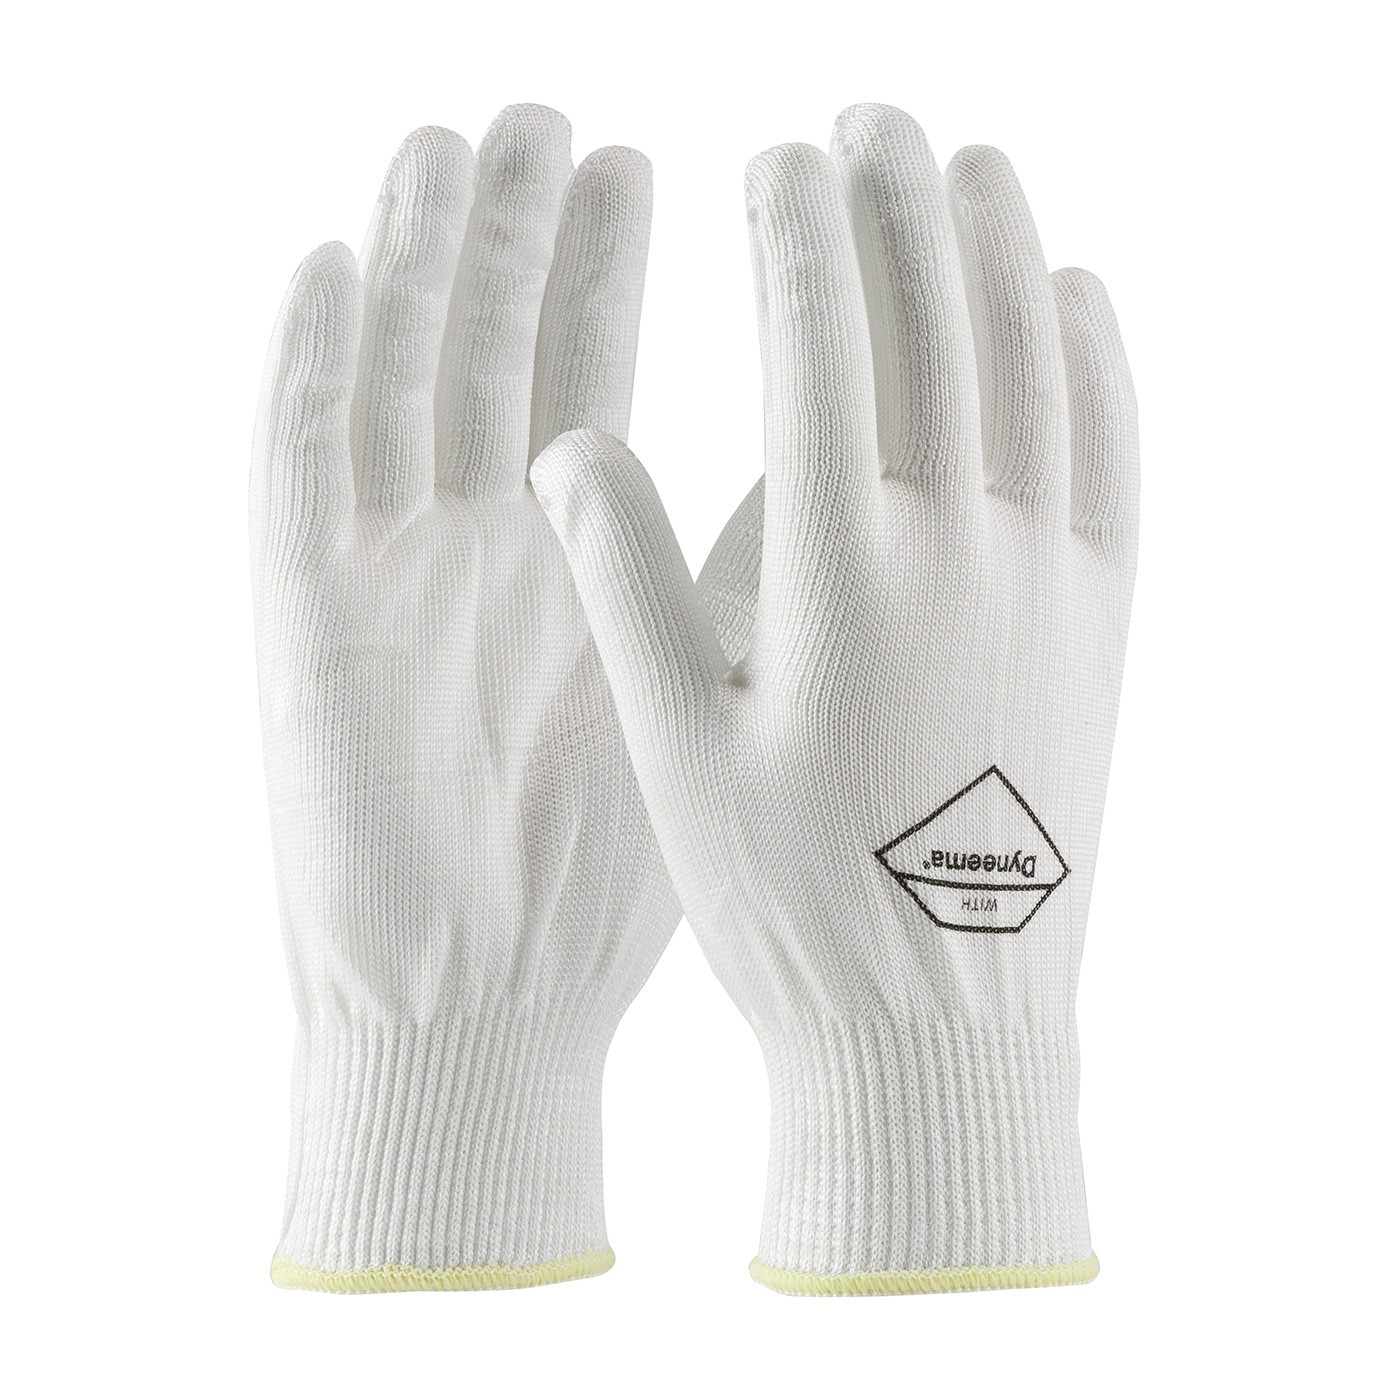 Kut Gard® Seamless Knit Dyneema® Glove - Light Weight  (#17-D200)